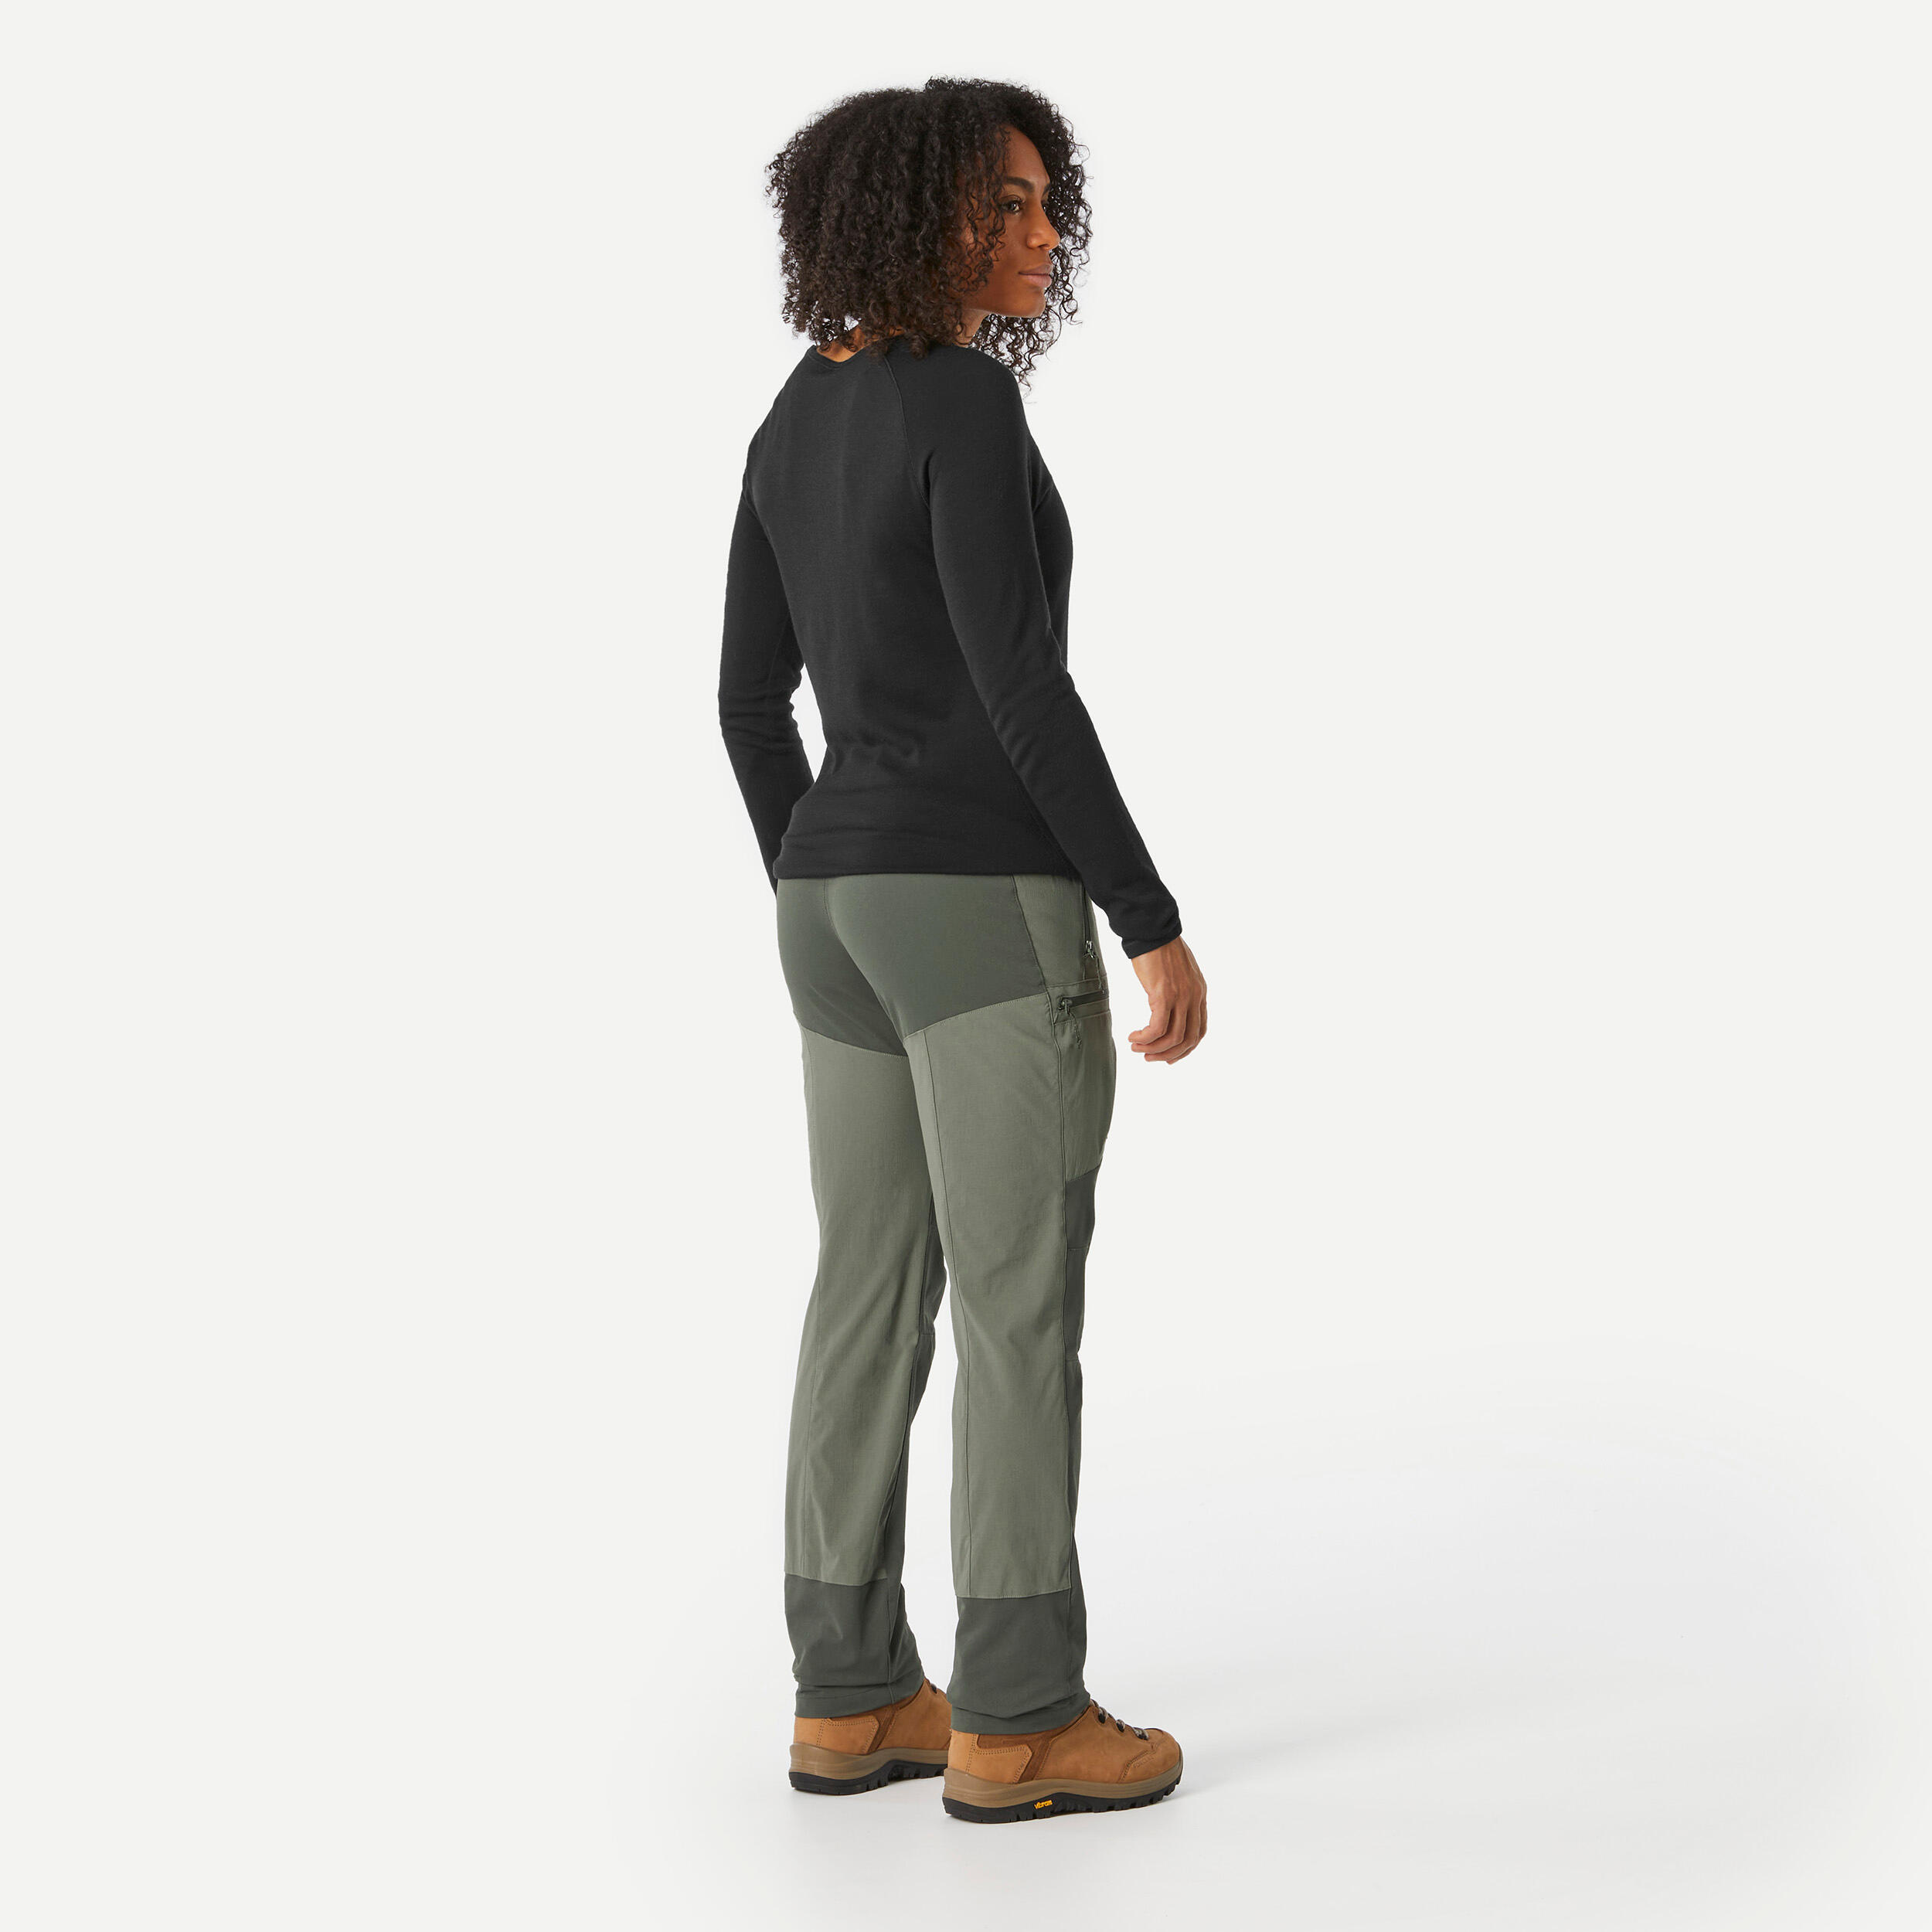 Women’s Hiking Pants - MT 500 Khaki